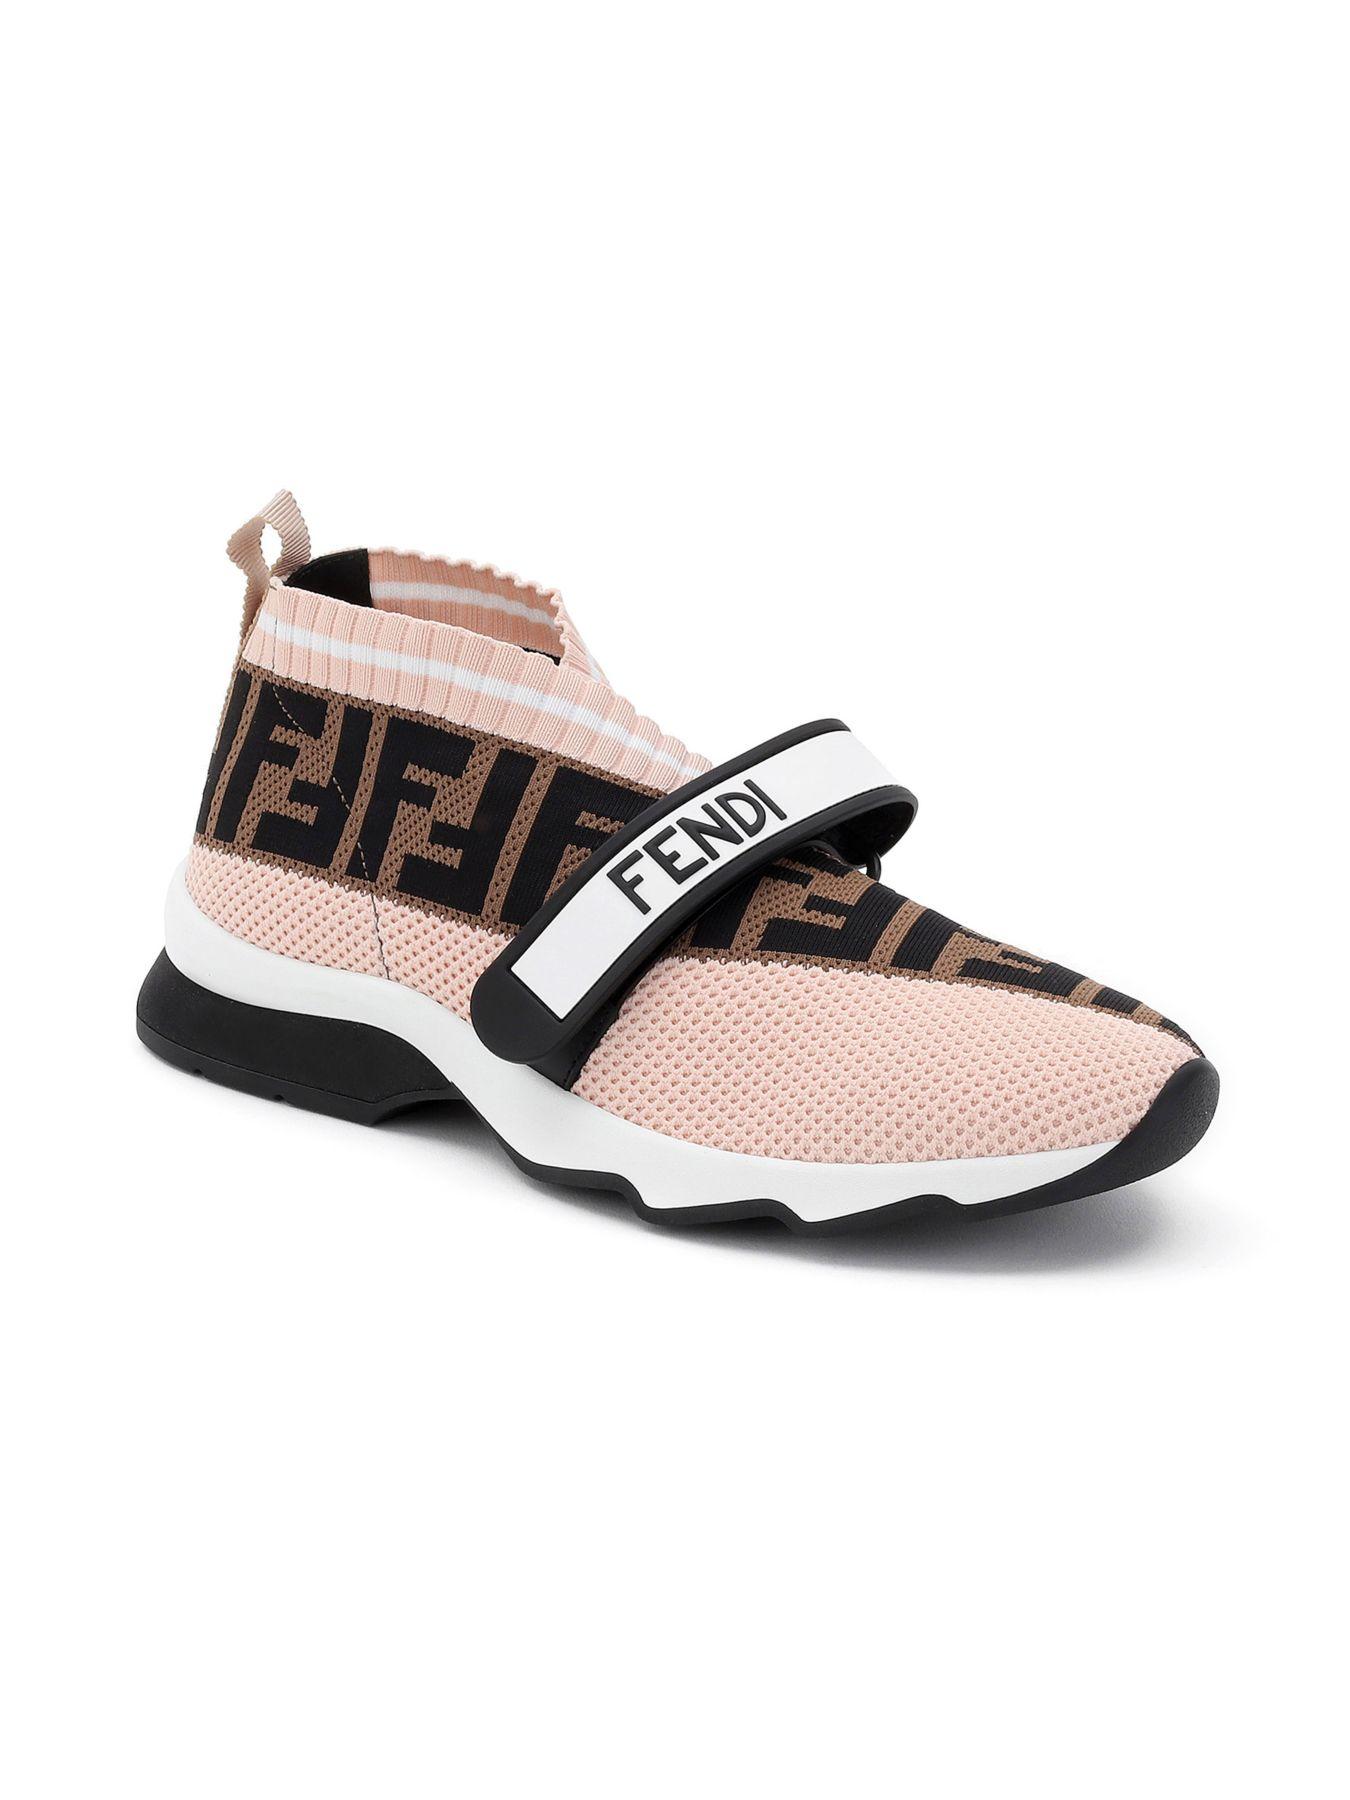 Fendi Leather Rockoko Knit Sneakers in Pink - Lyst